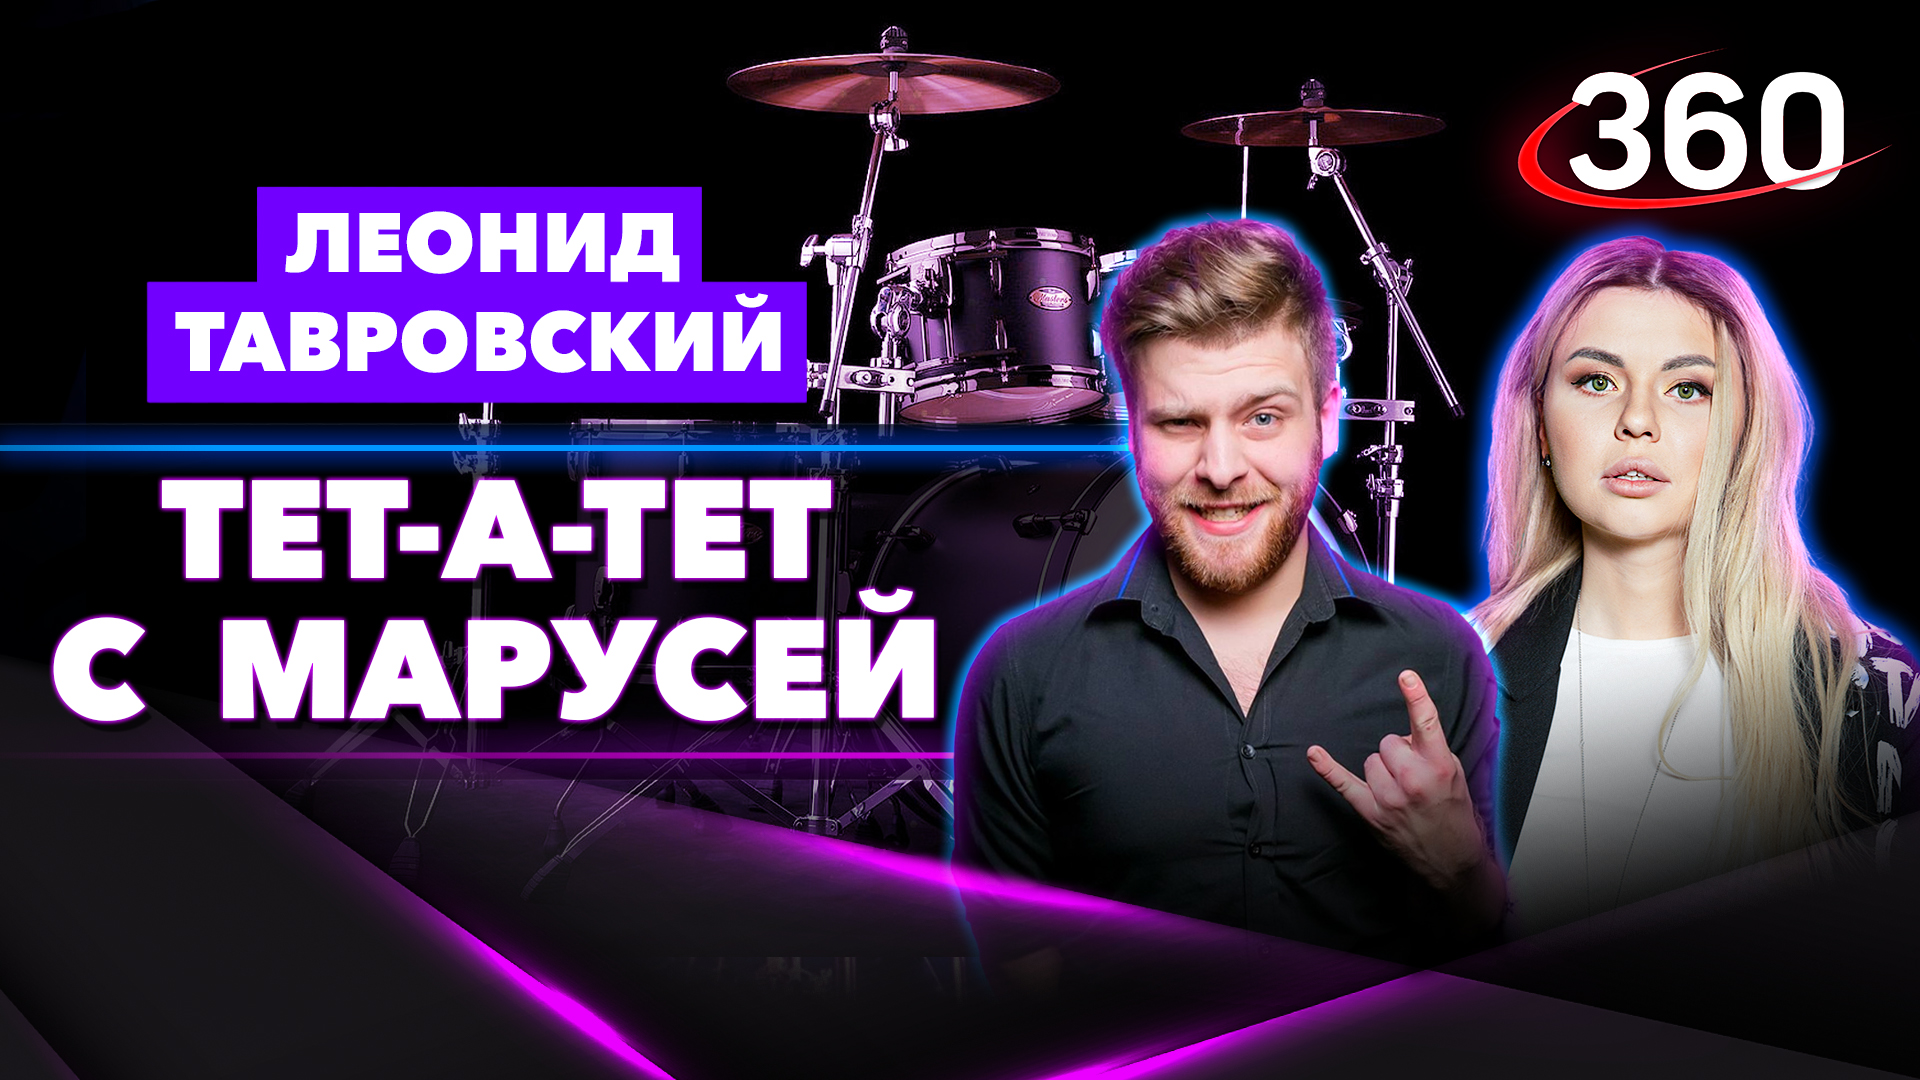 Музыкант Леонид Тавровский: «По факту, барабанщик - это дирижер оркестра в малом составе». Интервью